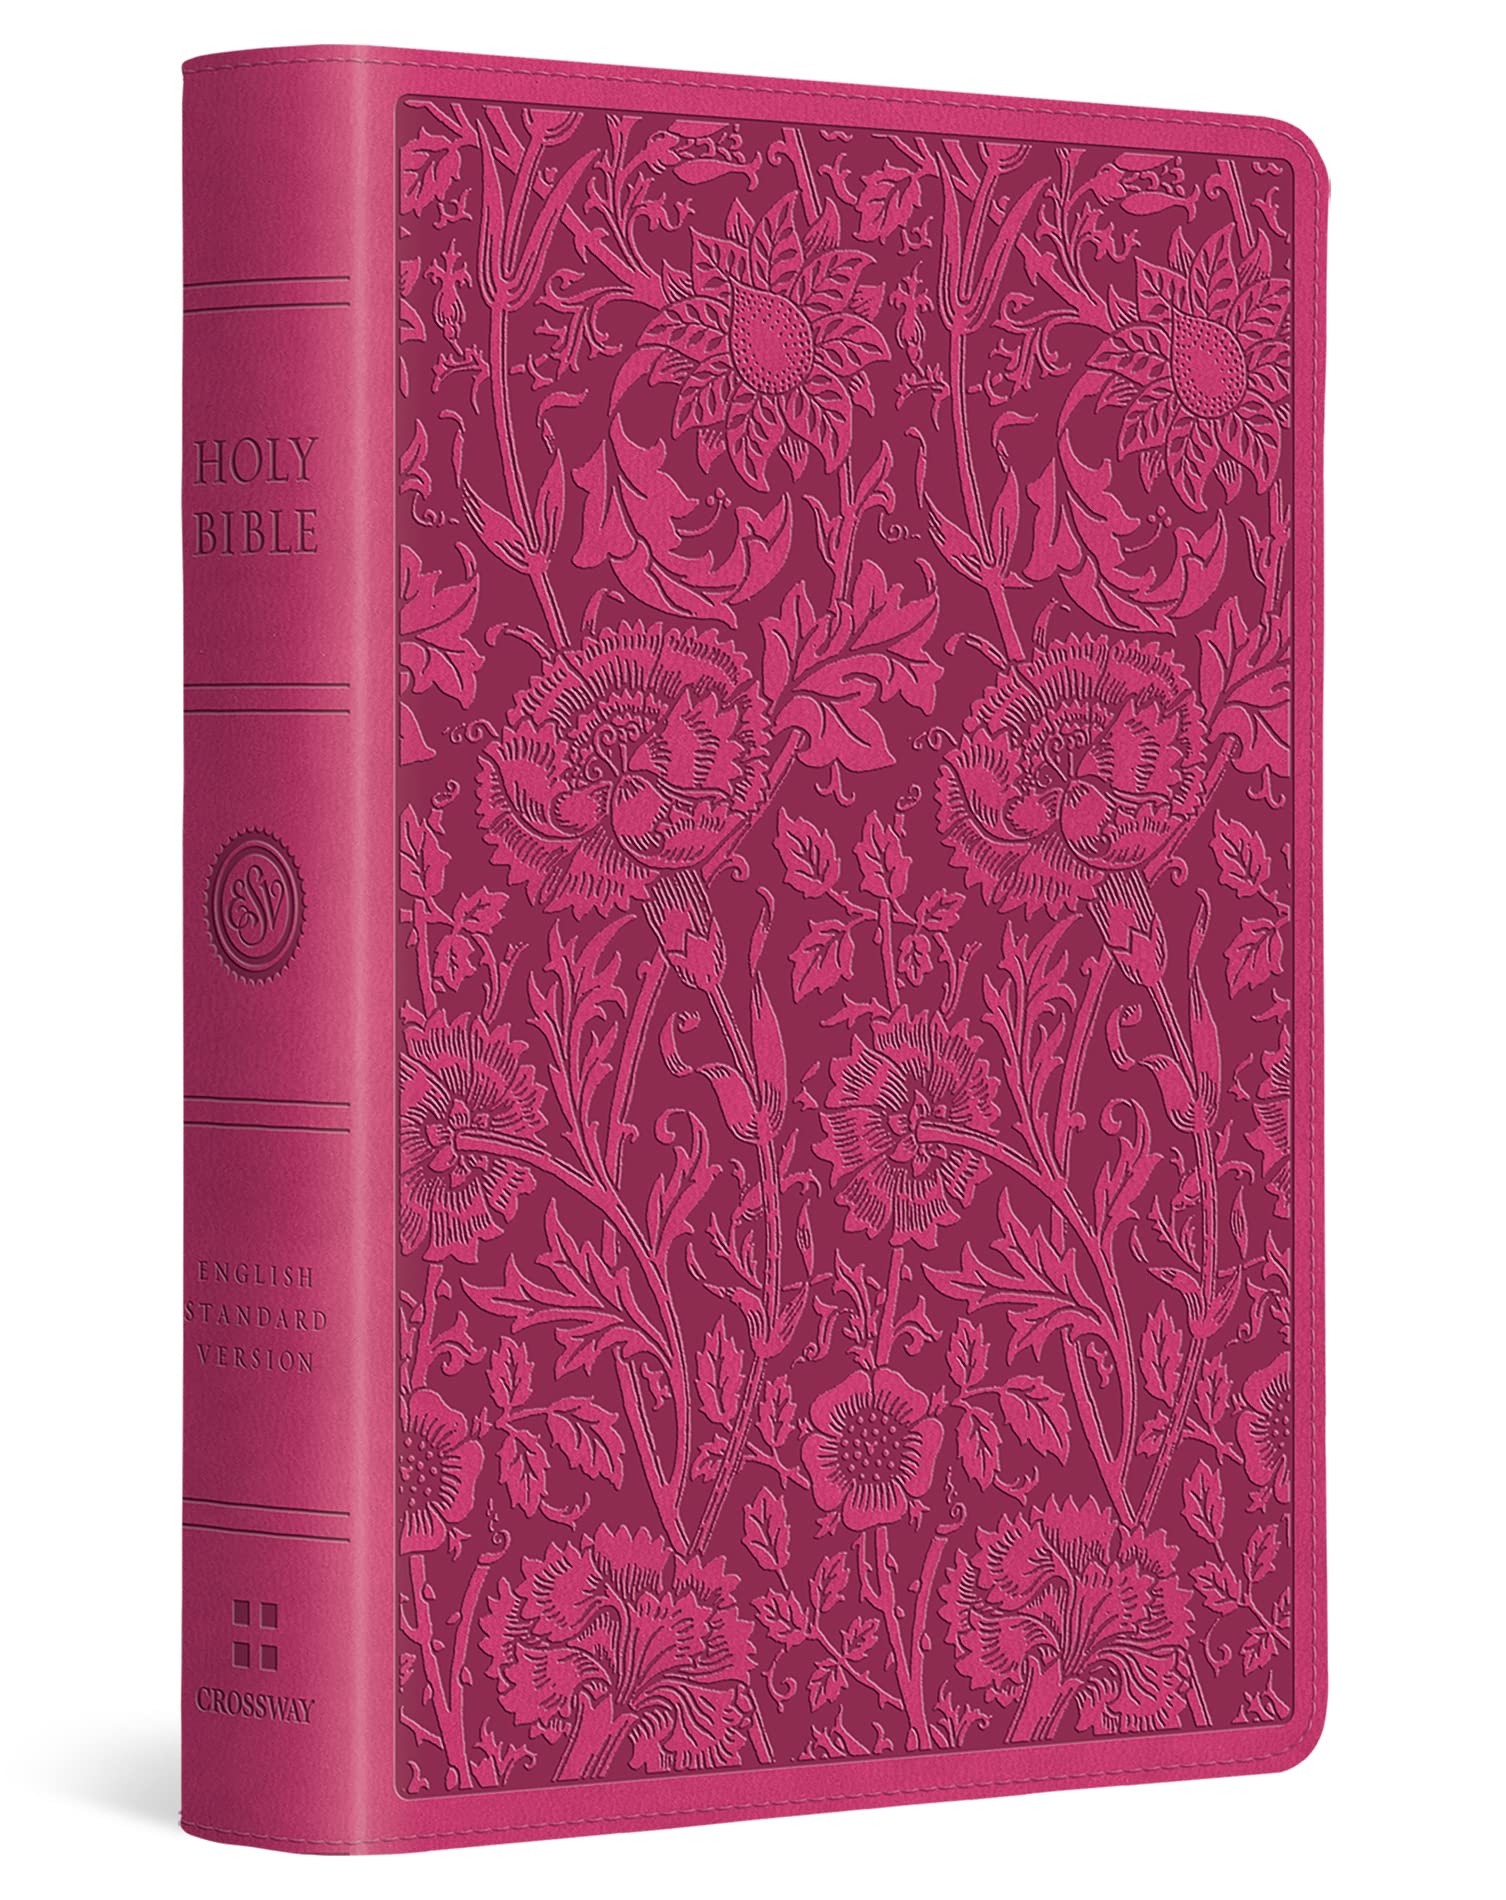 ESV Large Print Compact Bible (FONT SIZE: 8 pt., TruTone, Berry, Floral Design)